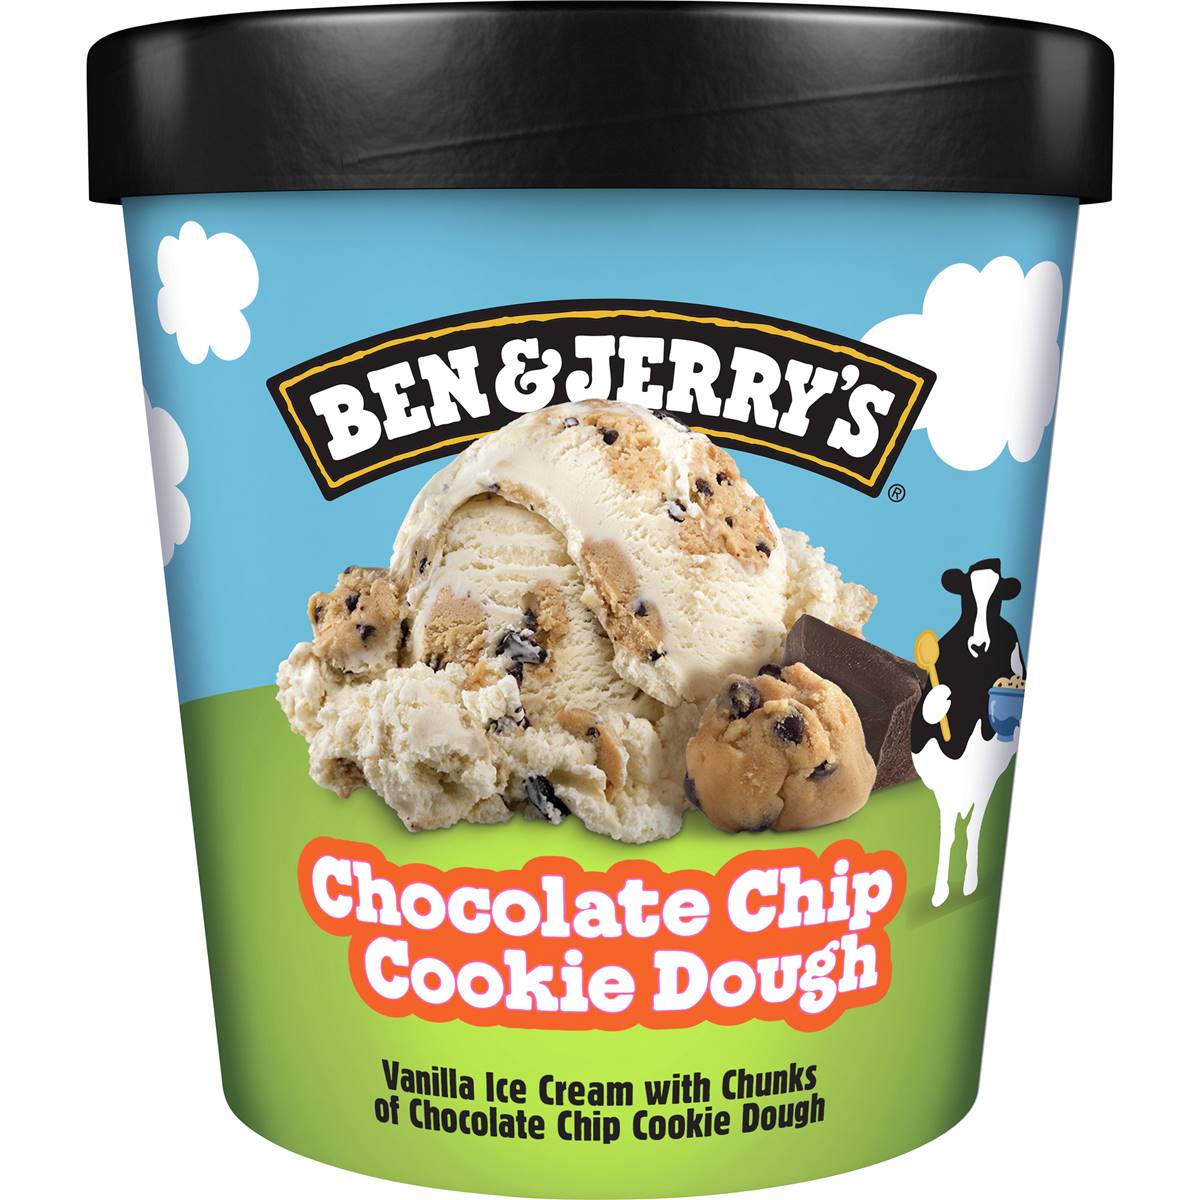 Calories in Ben & Jerry's Ice Cream Cookie Dough